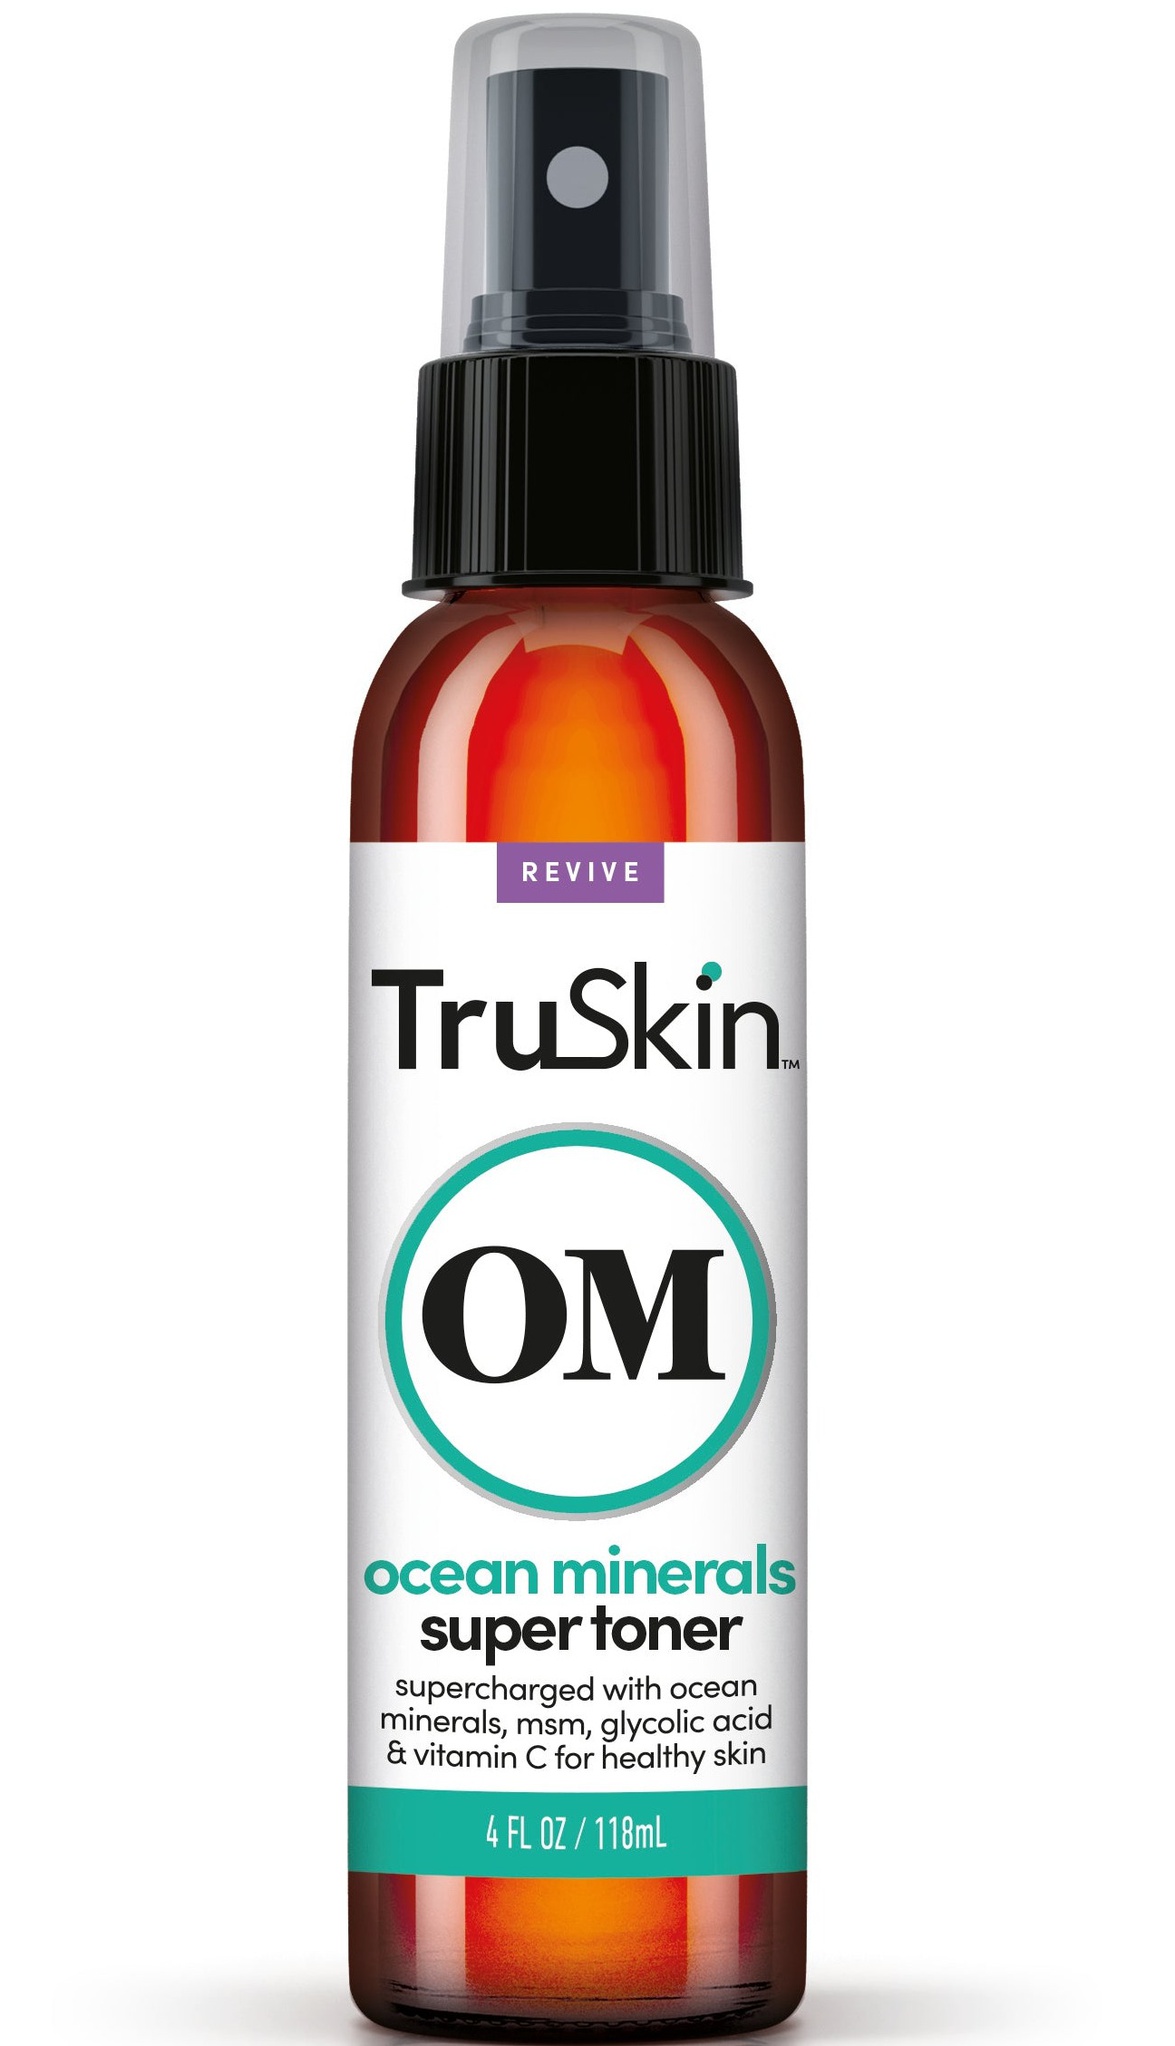 TruSkin Om Ocean Minerals Super Toner